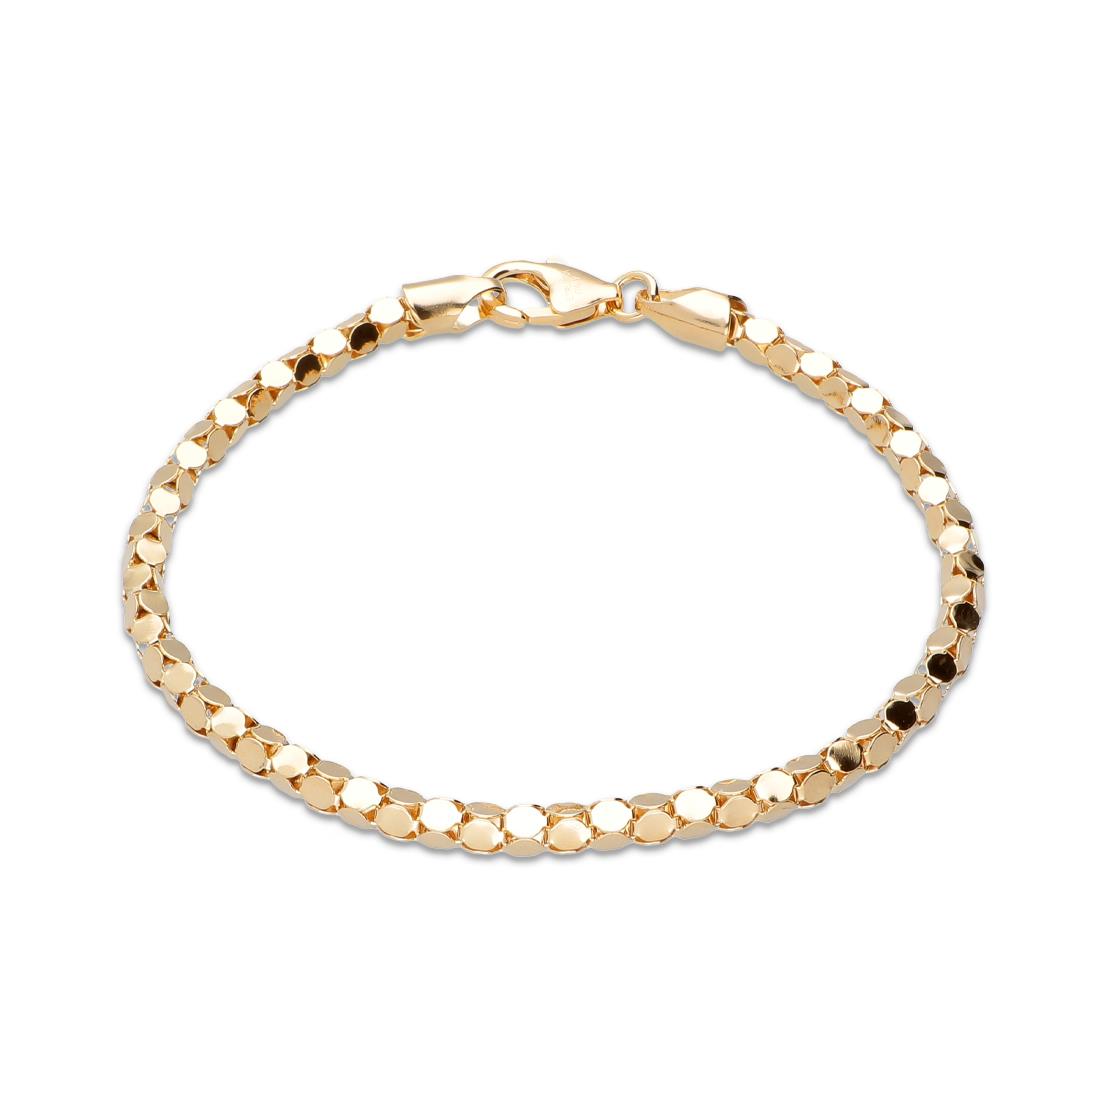 Gold plated bracelet - TOSCANA BY ETRUSCA